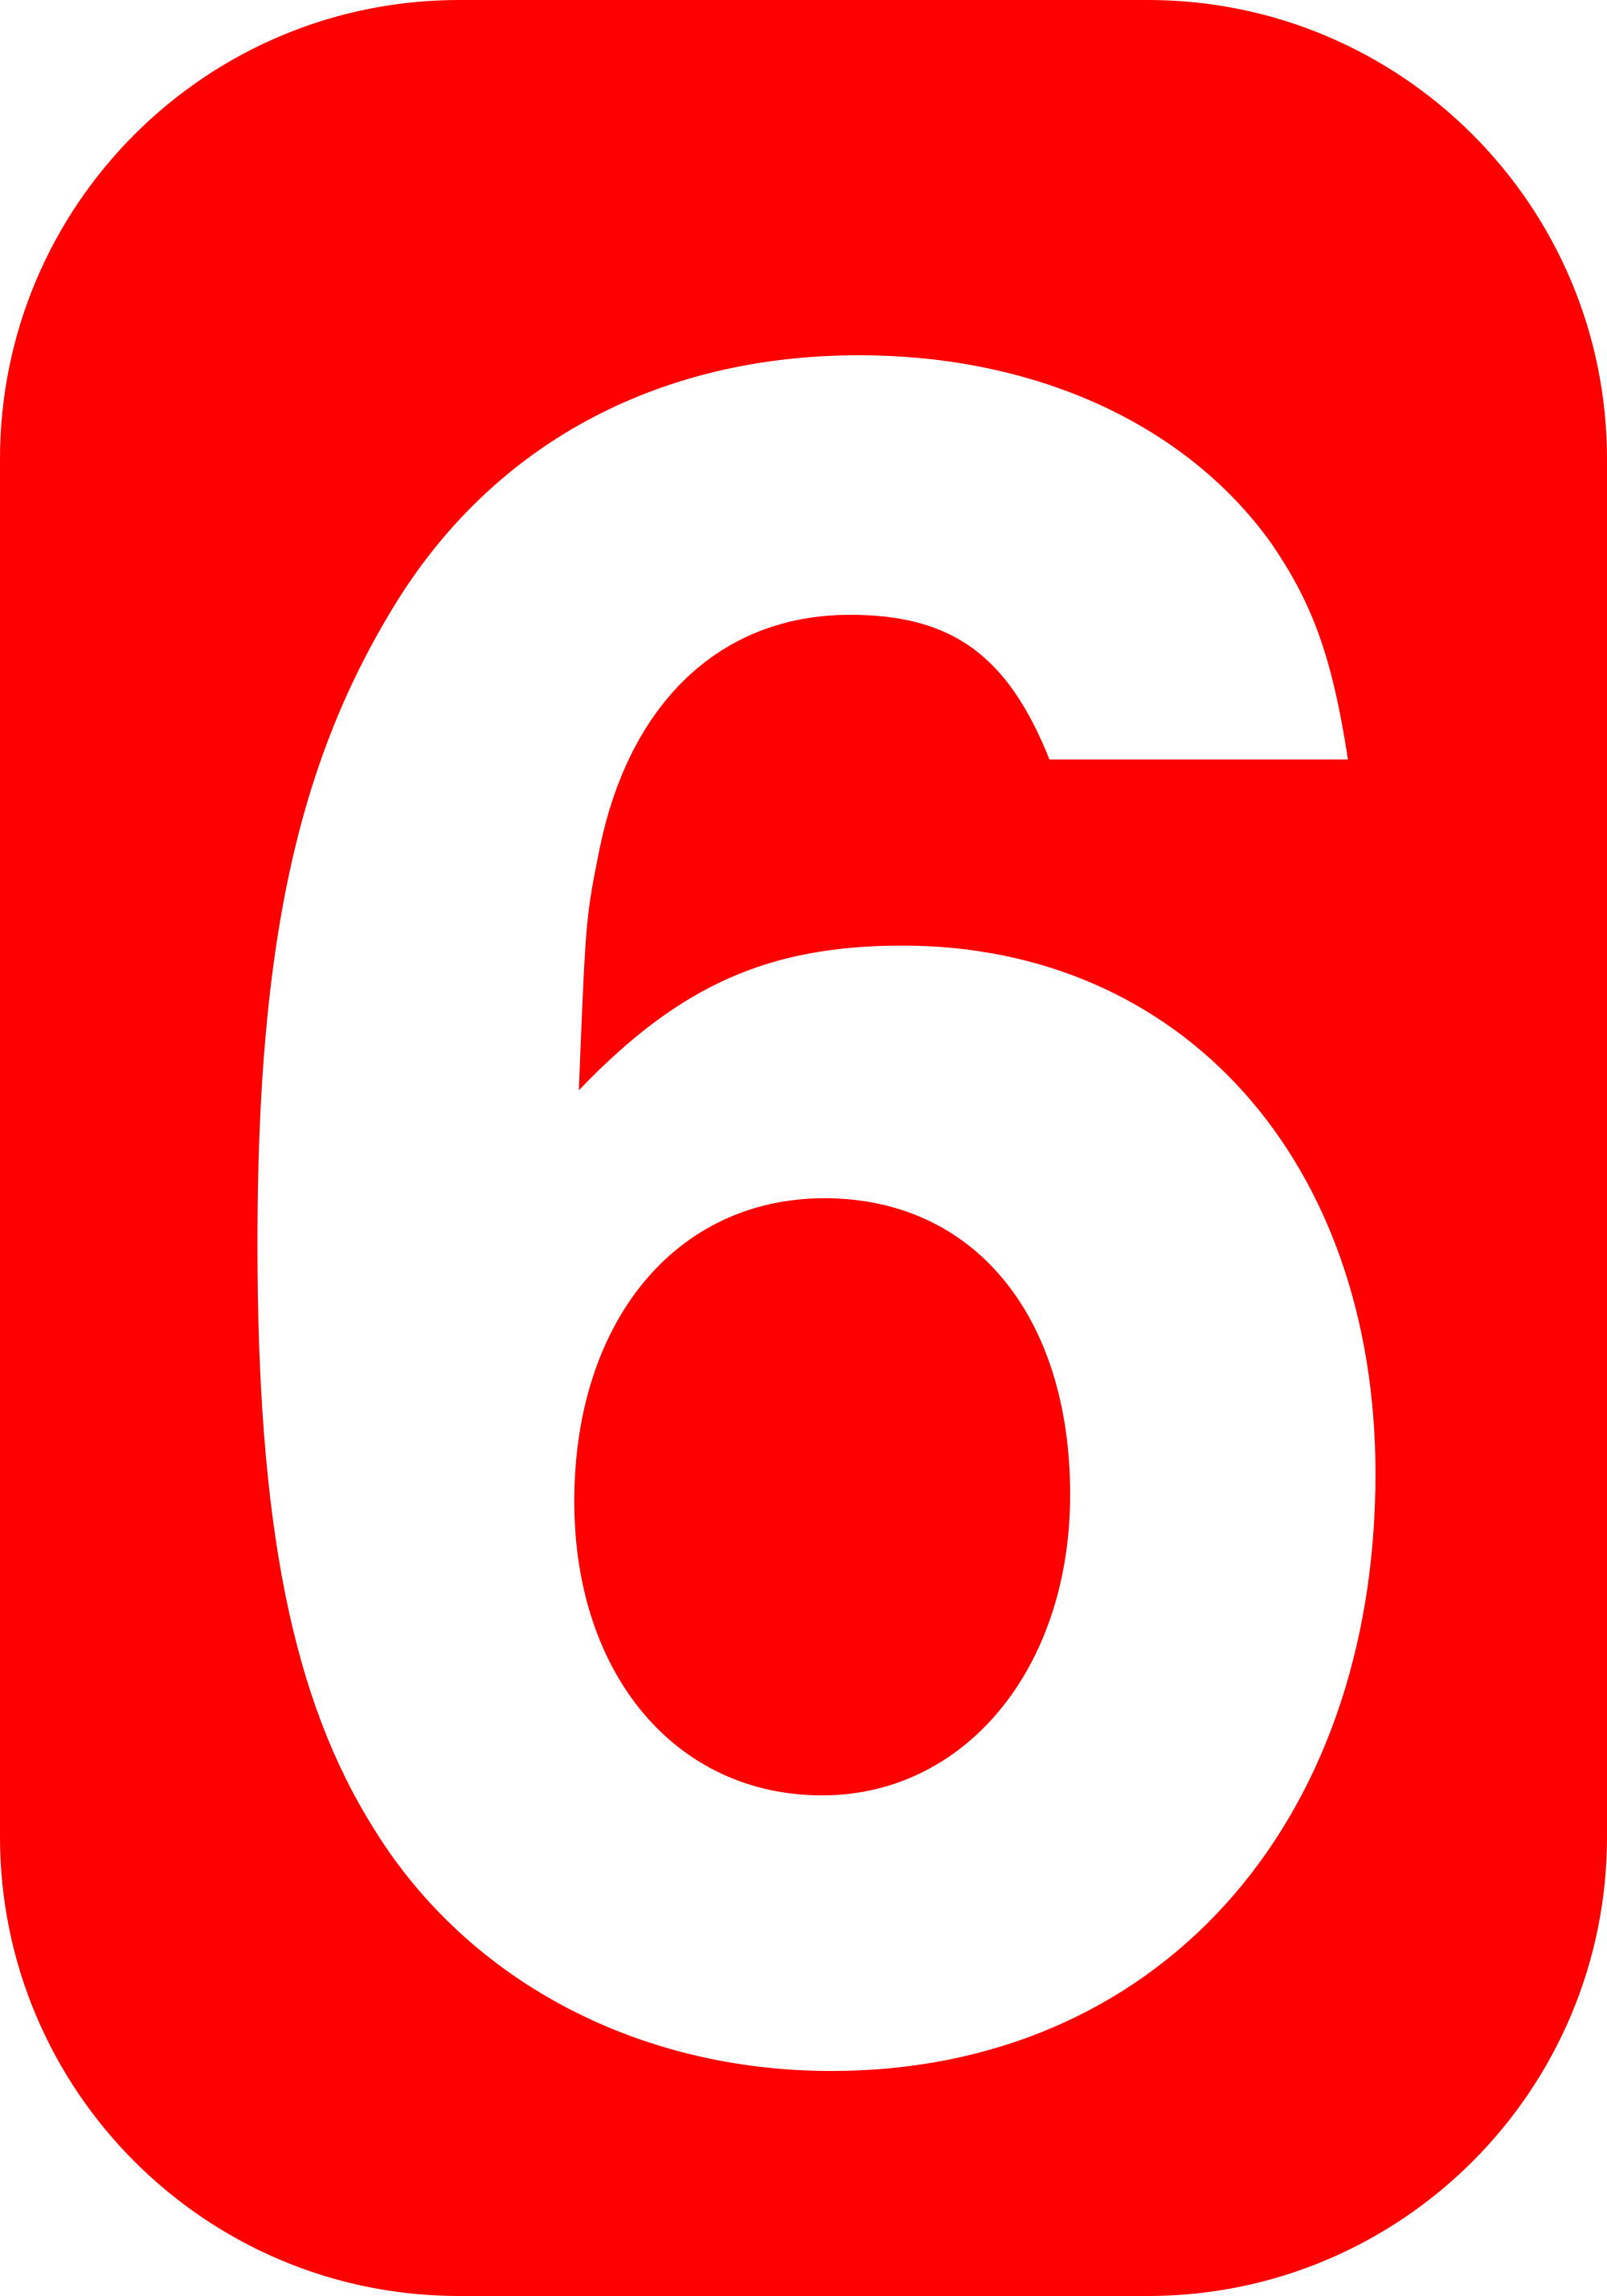 संख्या 6